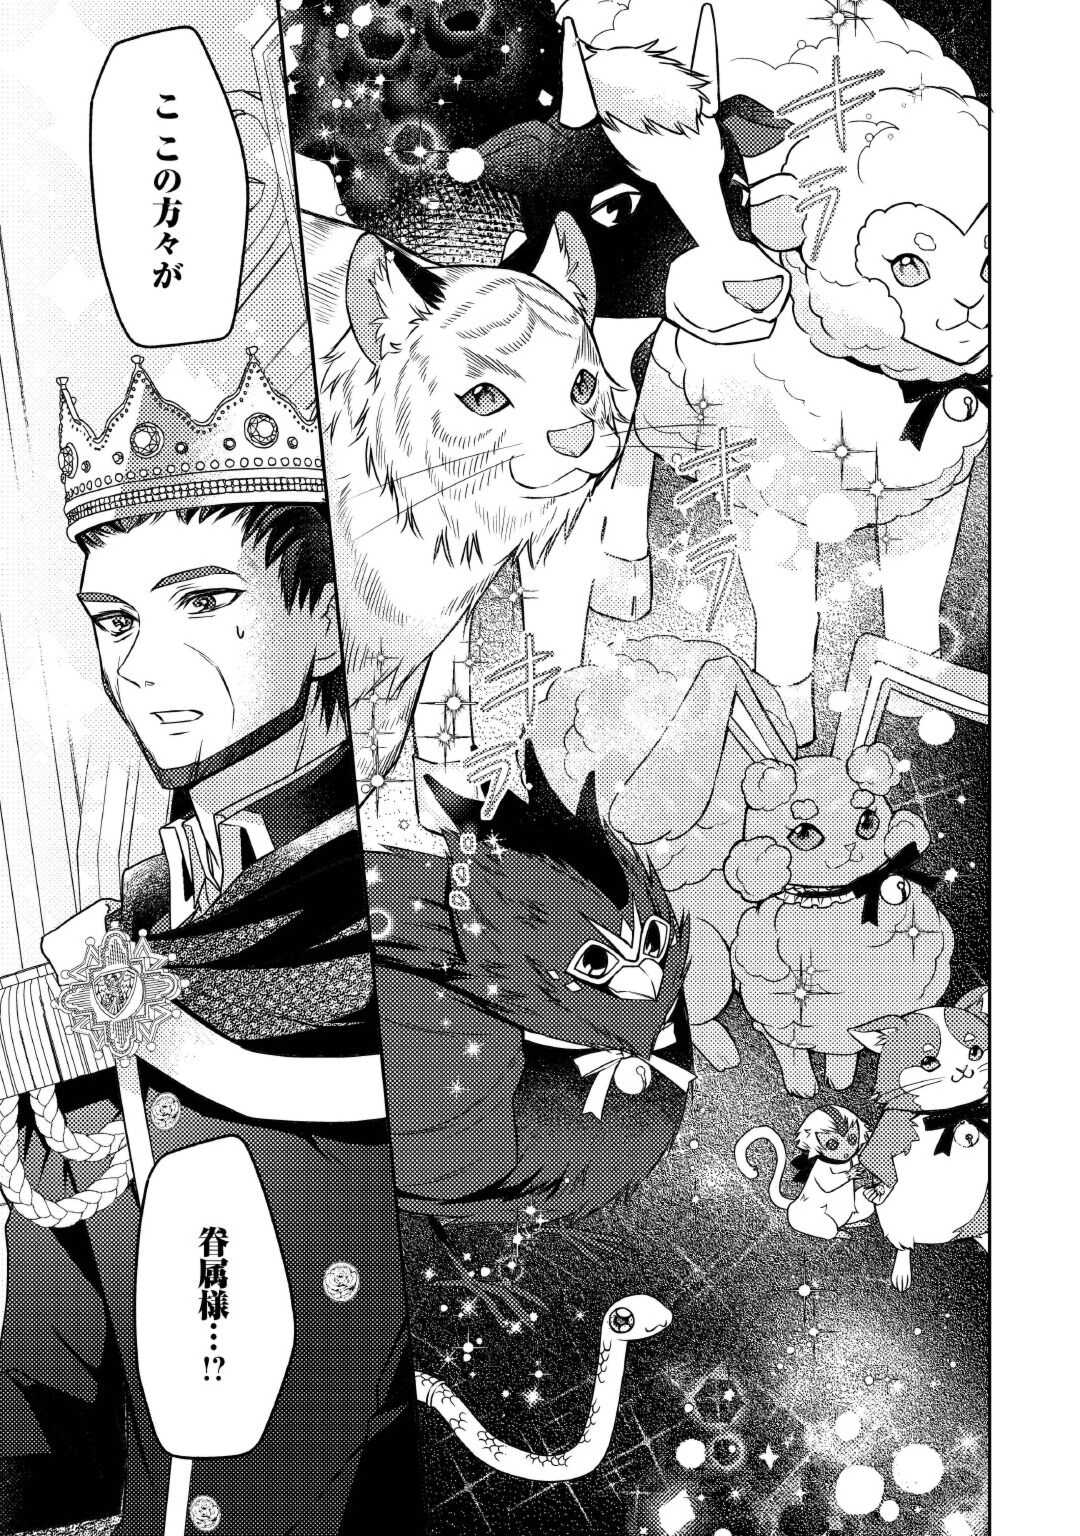 Toaru Chisana Mura No Chi Tona Tanya Ya San - Chapter 19 - Page 7